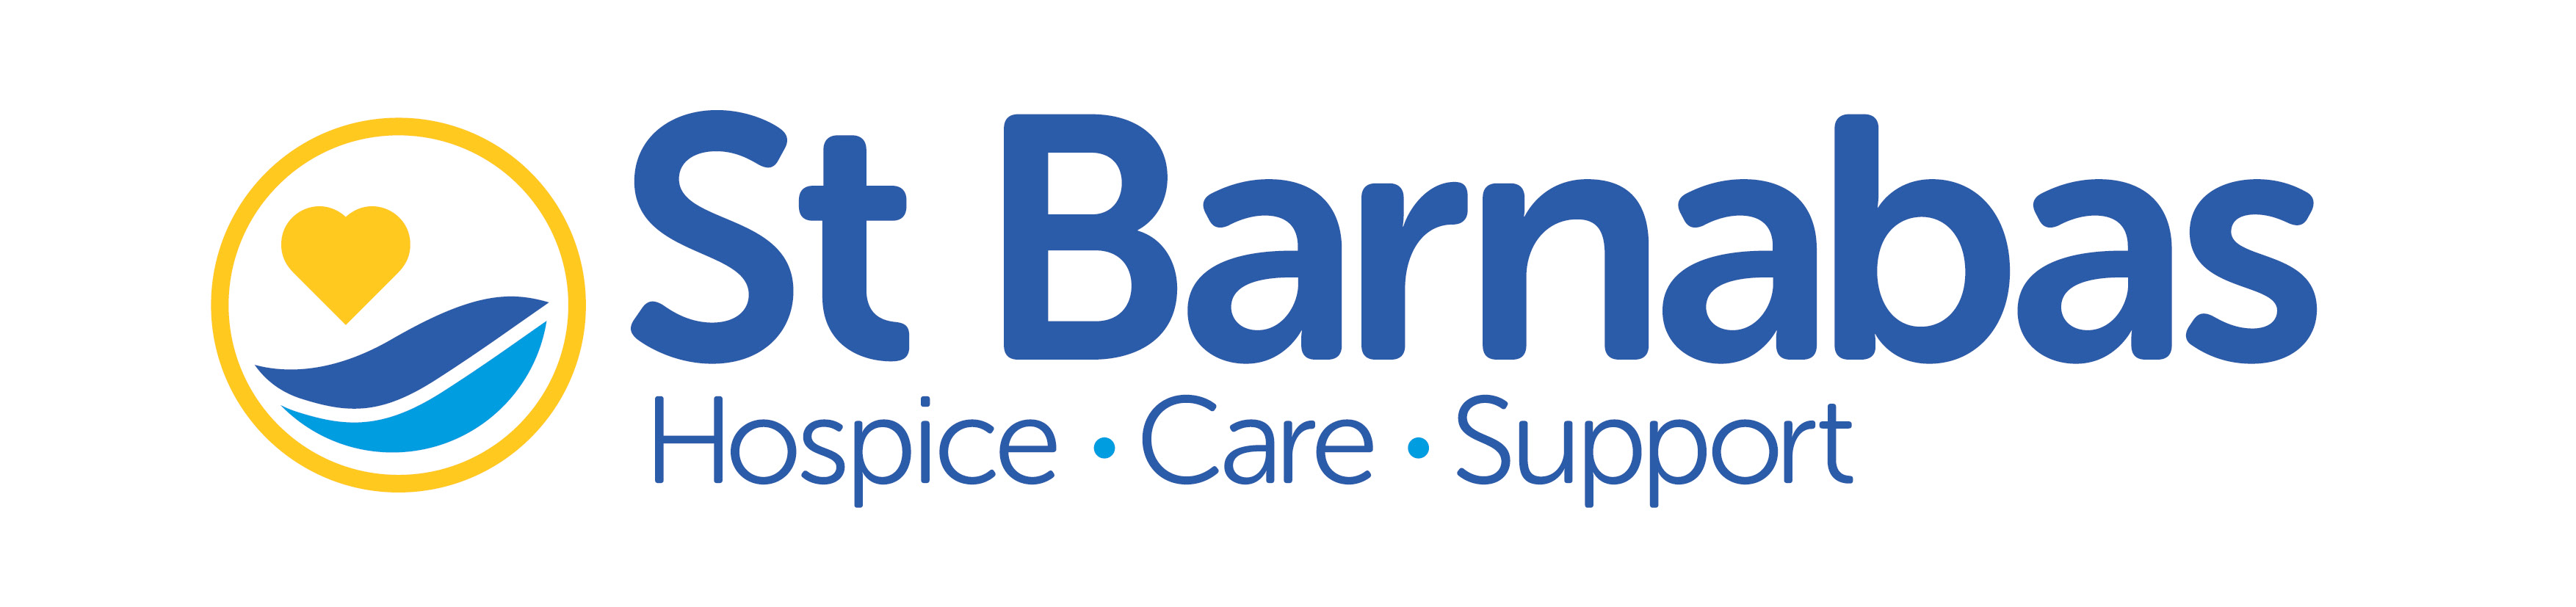 St Barnabas Hospice Company Logo